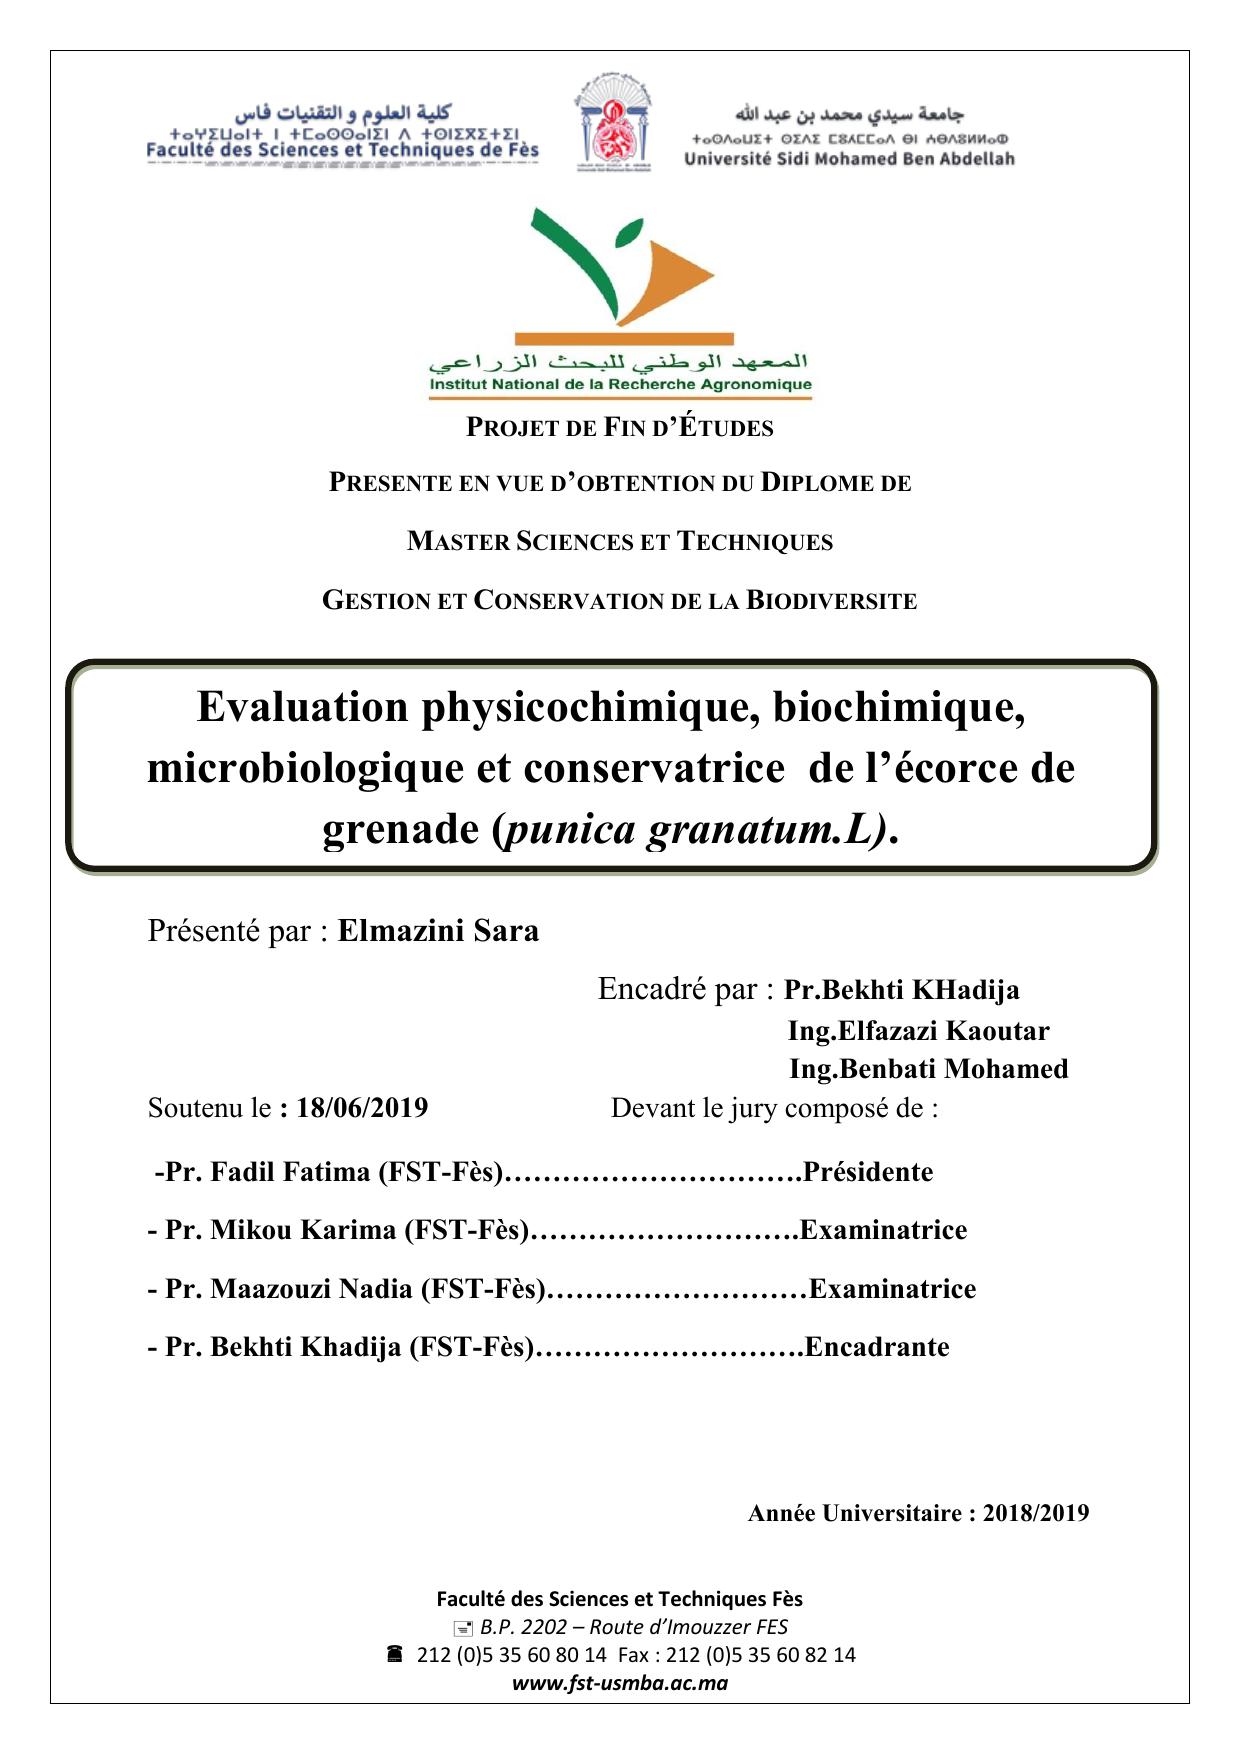 Evaluation physicochimique, biochimique, microbiologique et conservatrice de l’écorce de grenade (punica granatum.L).